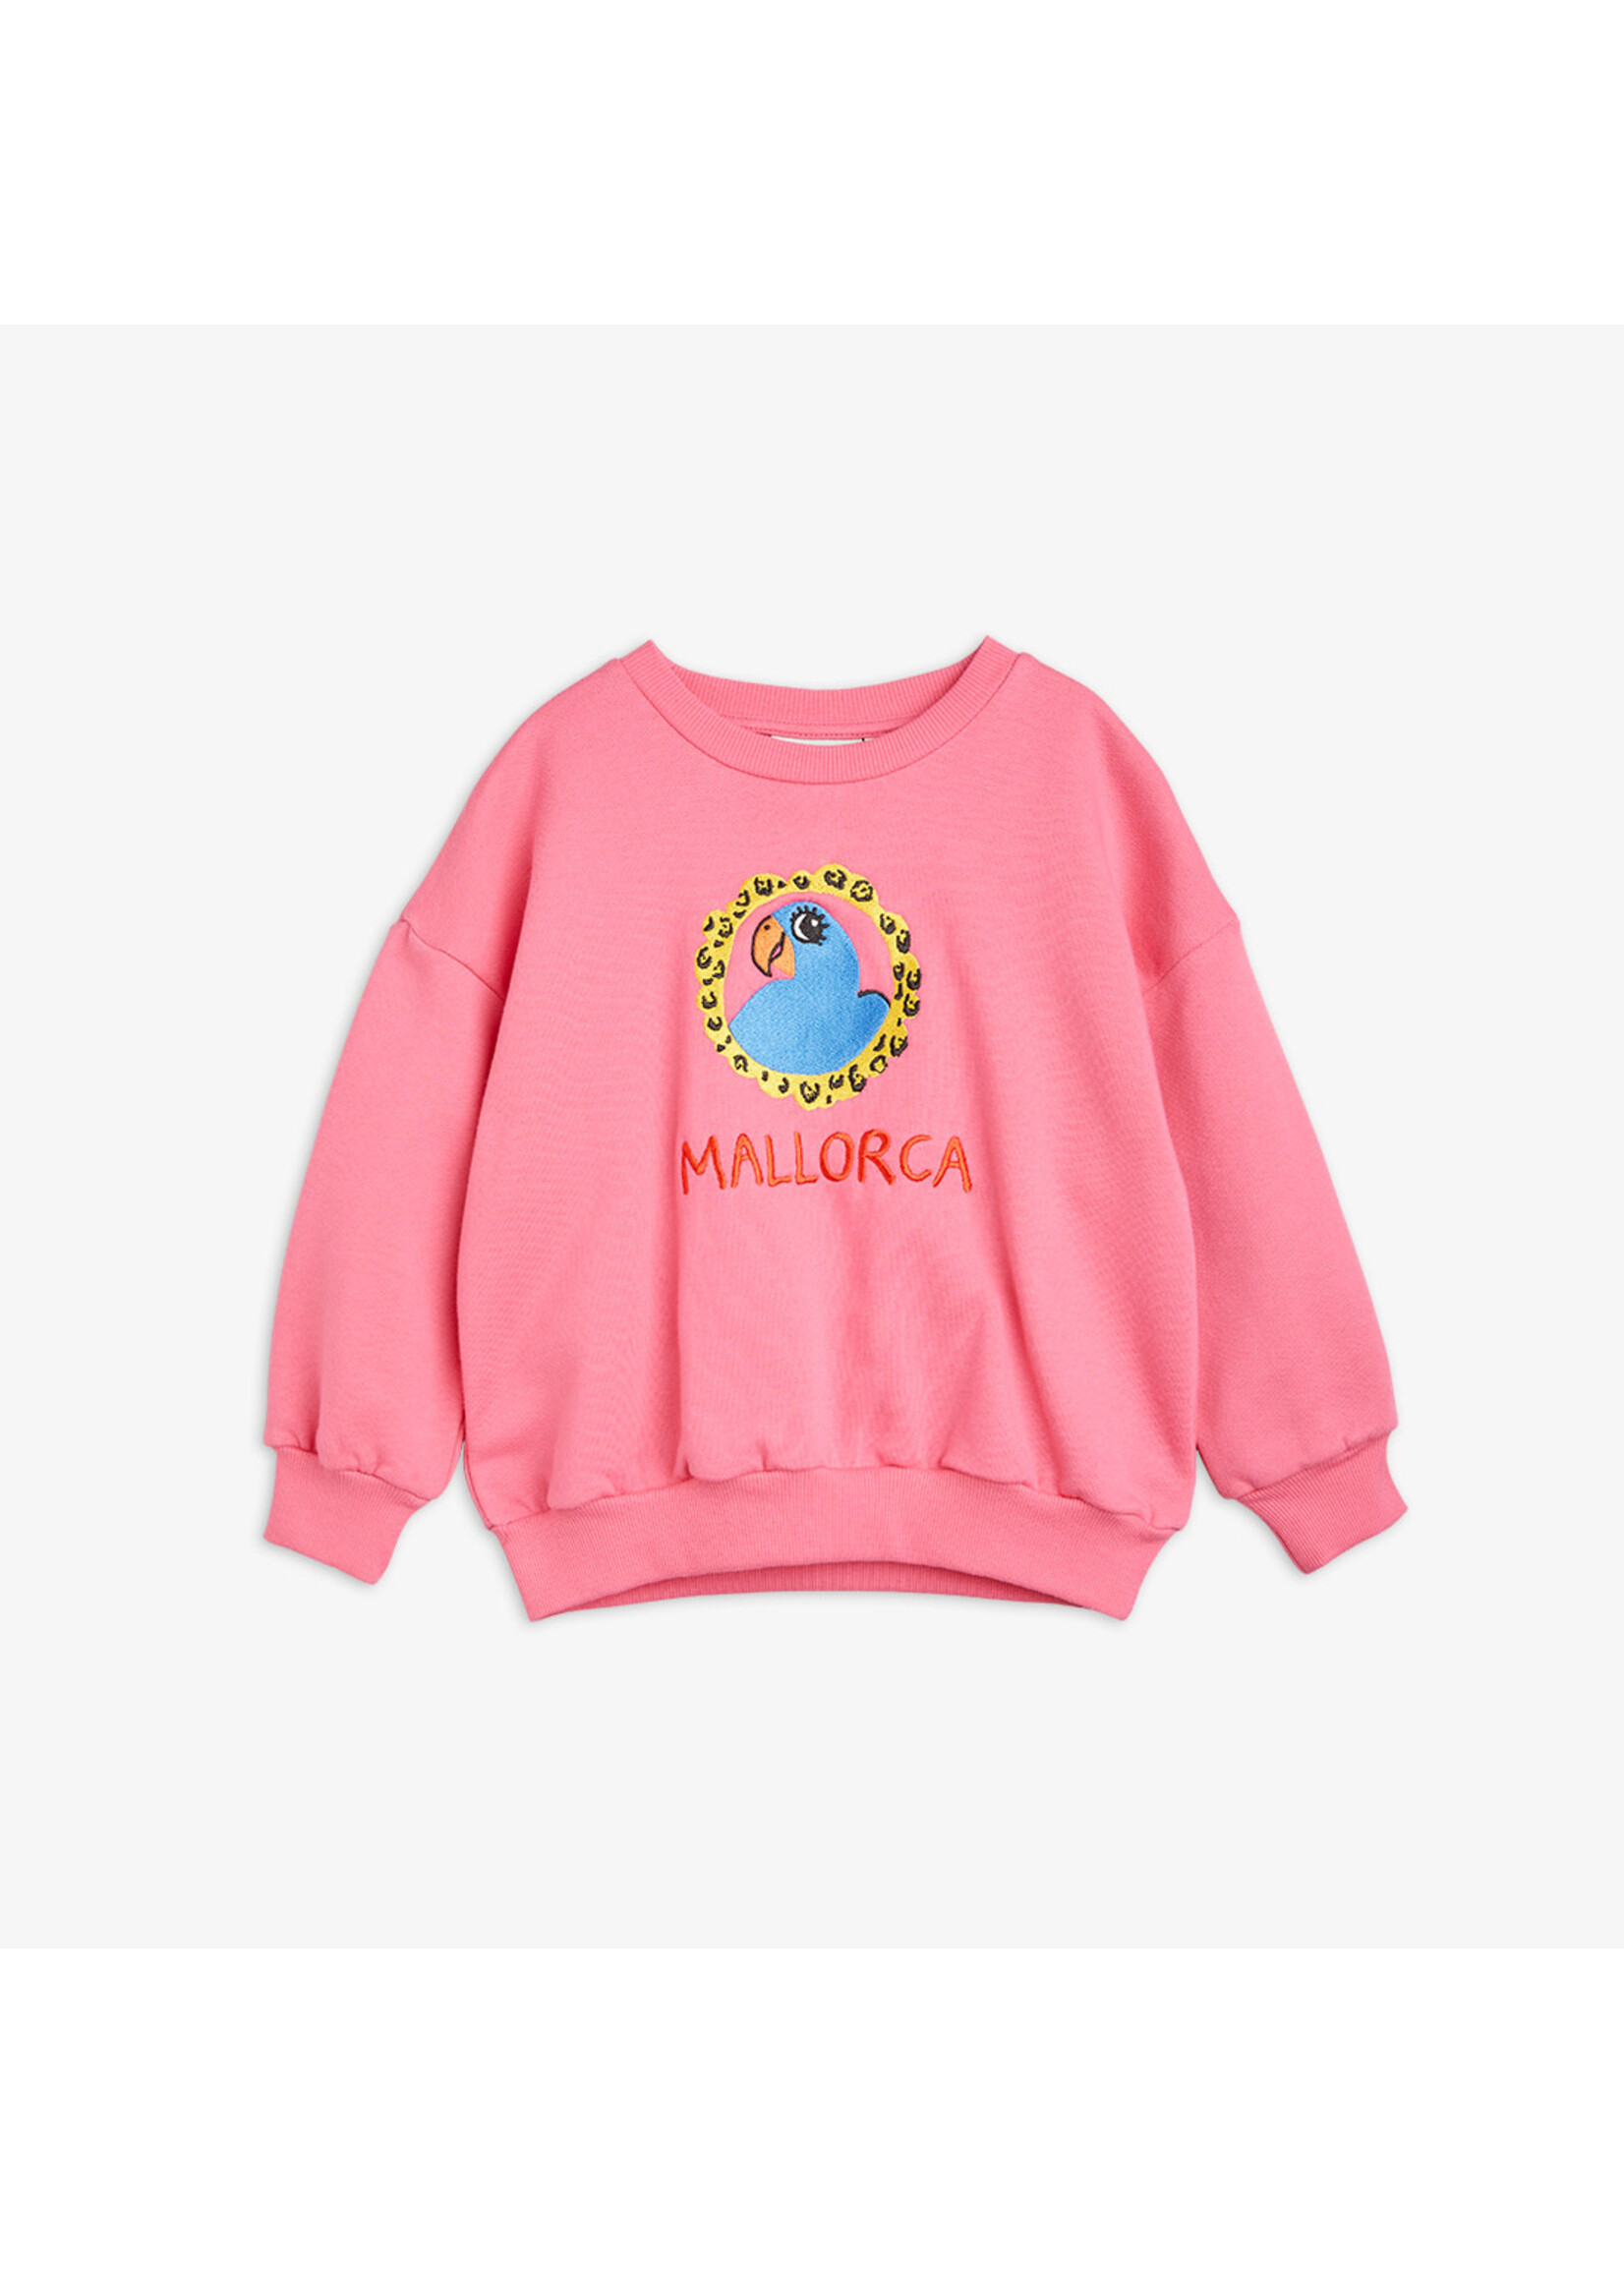 MINI RODINI Mini Rodini - Parrot emb sweatshirt - Pink